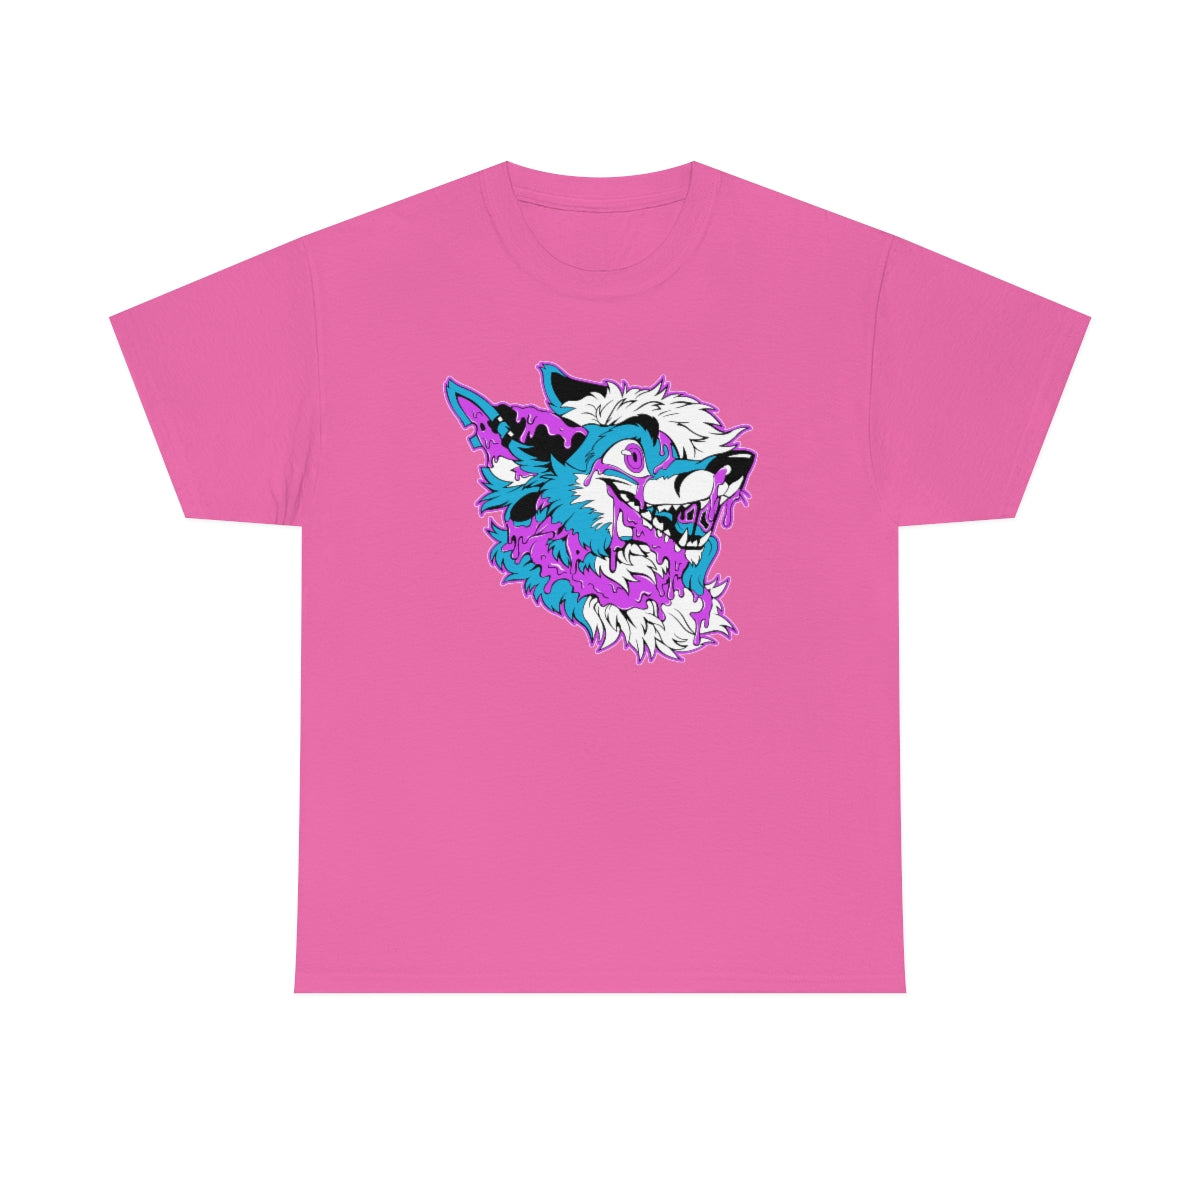 Light Blue and Pink - T-Shirt T-Shirt Artworktee Pink S 